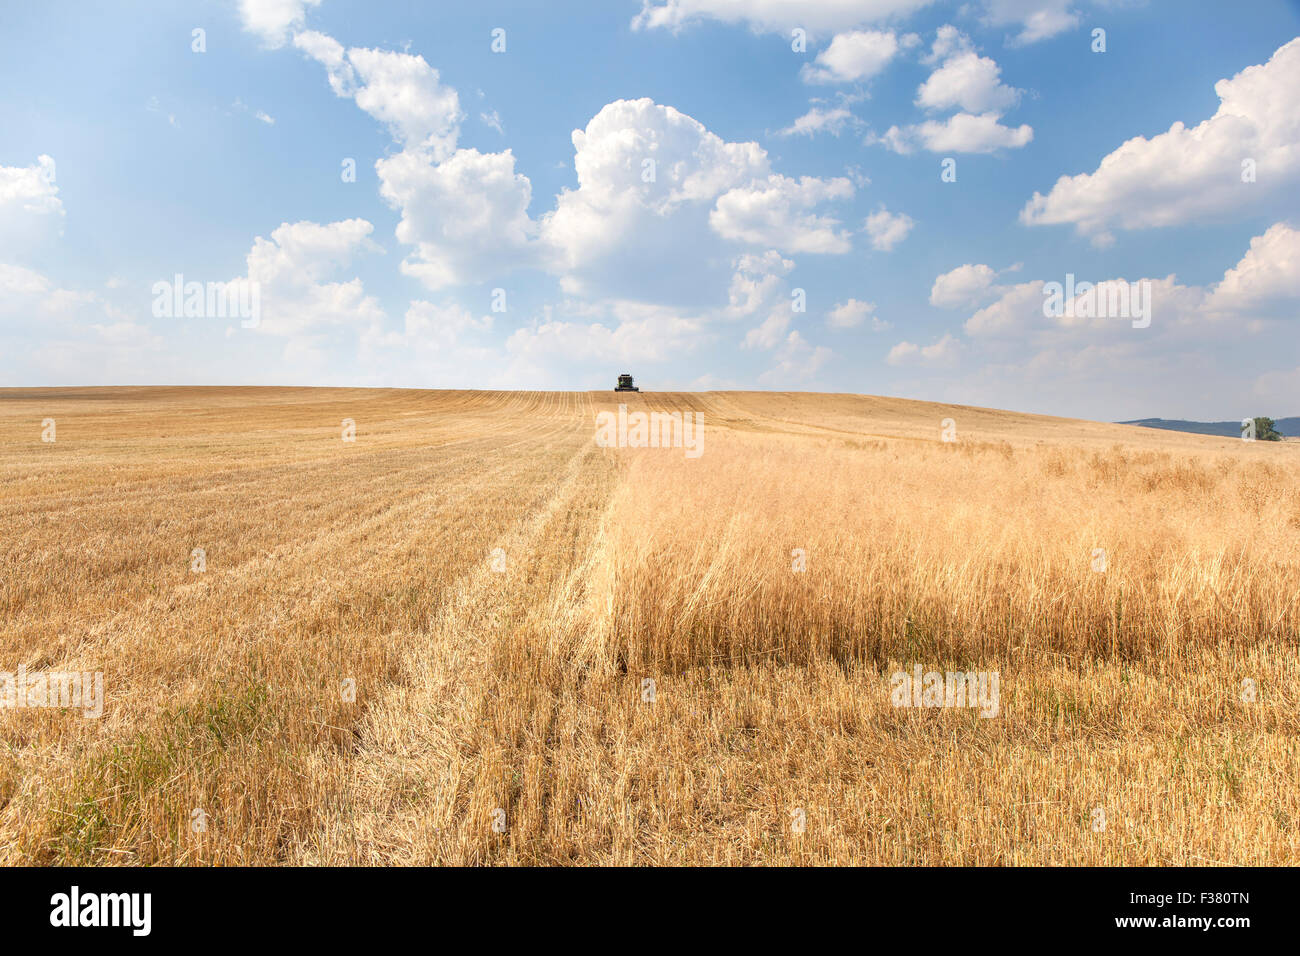 Paesaggio rurale con un harvester raccogliendo un ampio campo di grano in un caldo giorno d'estate. La macchina è in movimento direttamente alla fotocamera. T Foto Stock